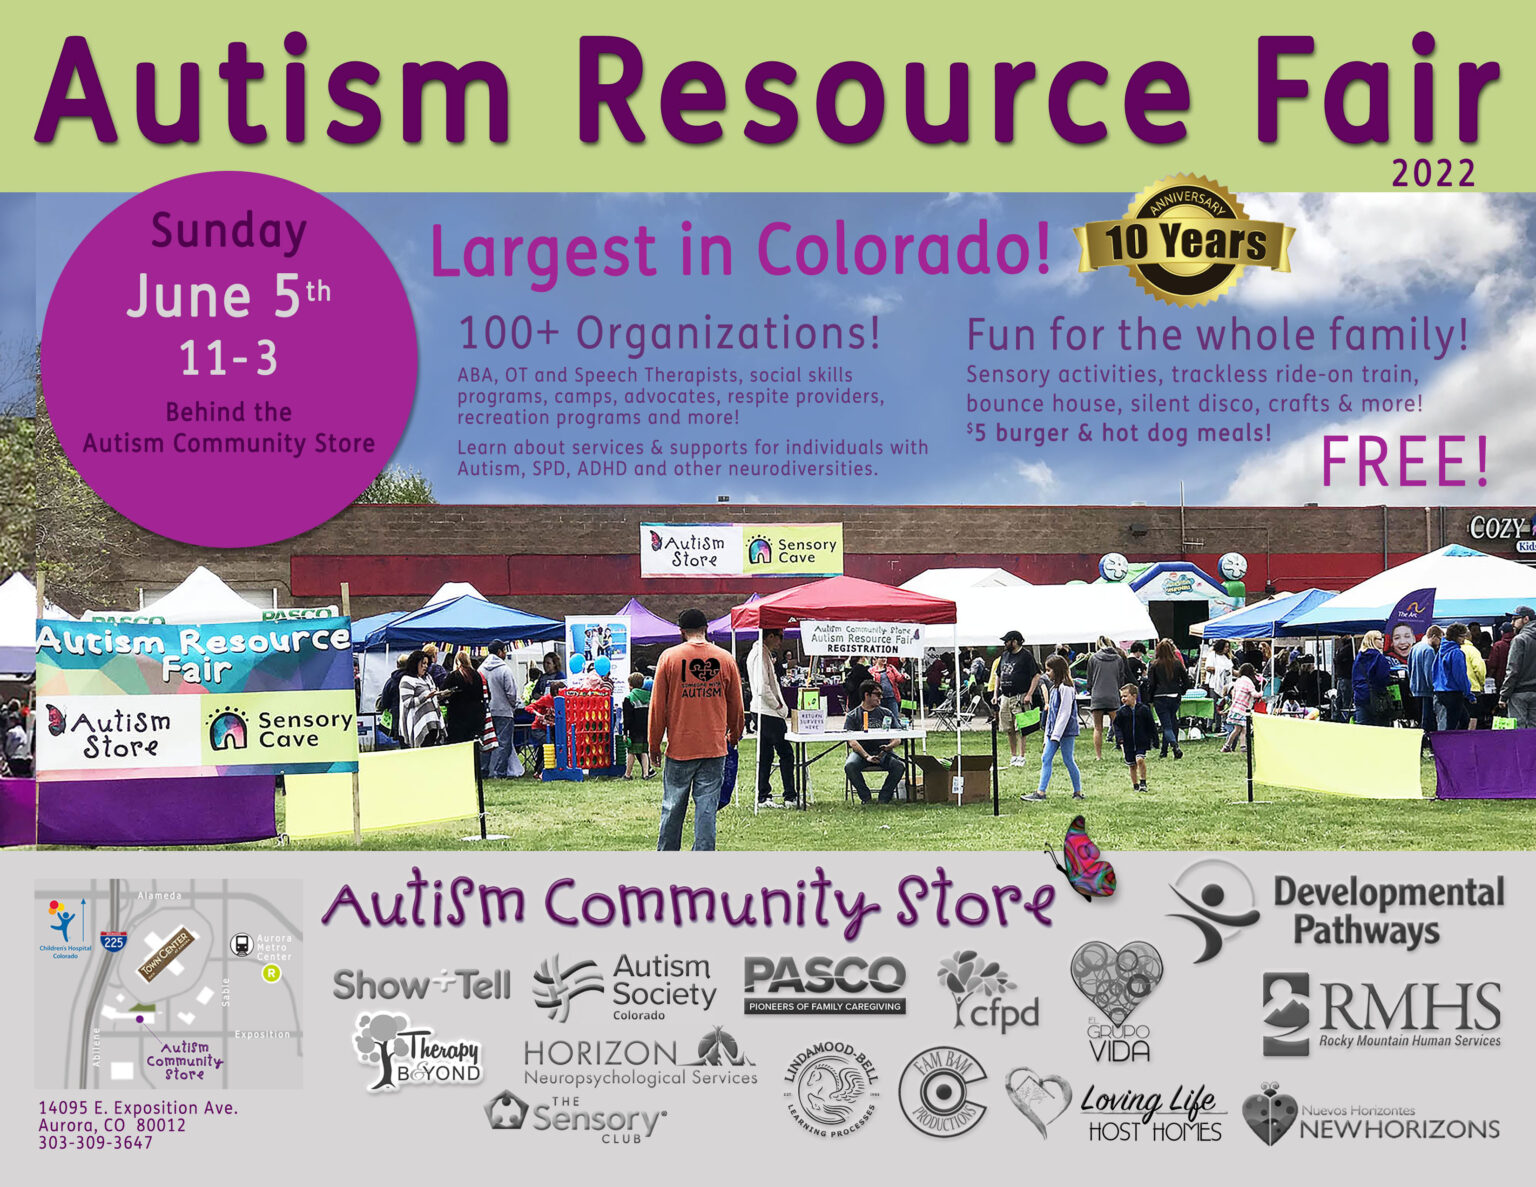 Autism Resource Fair 2022 Developmental Pathways